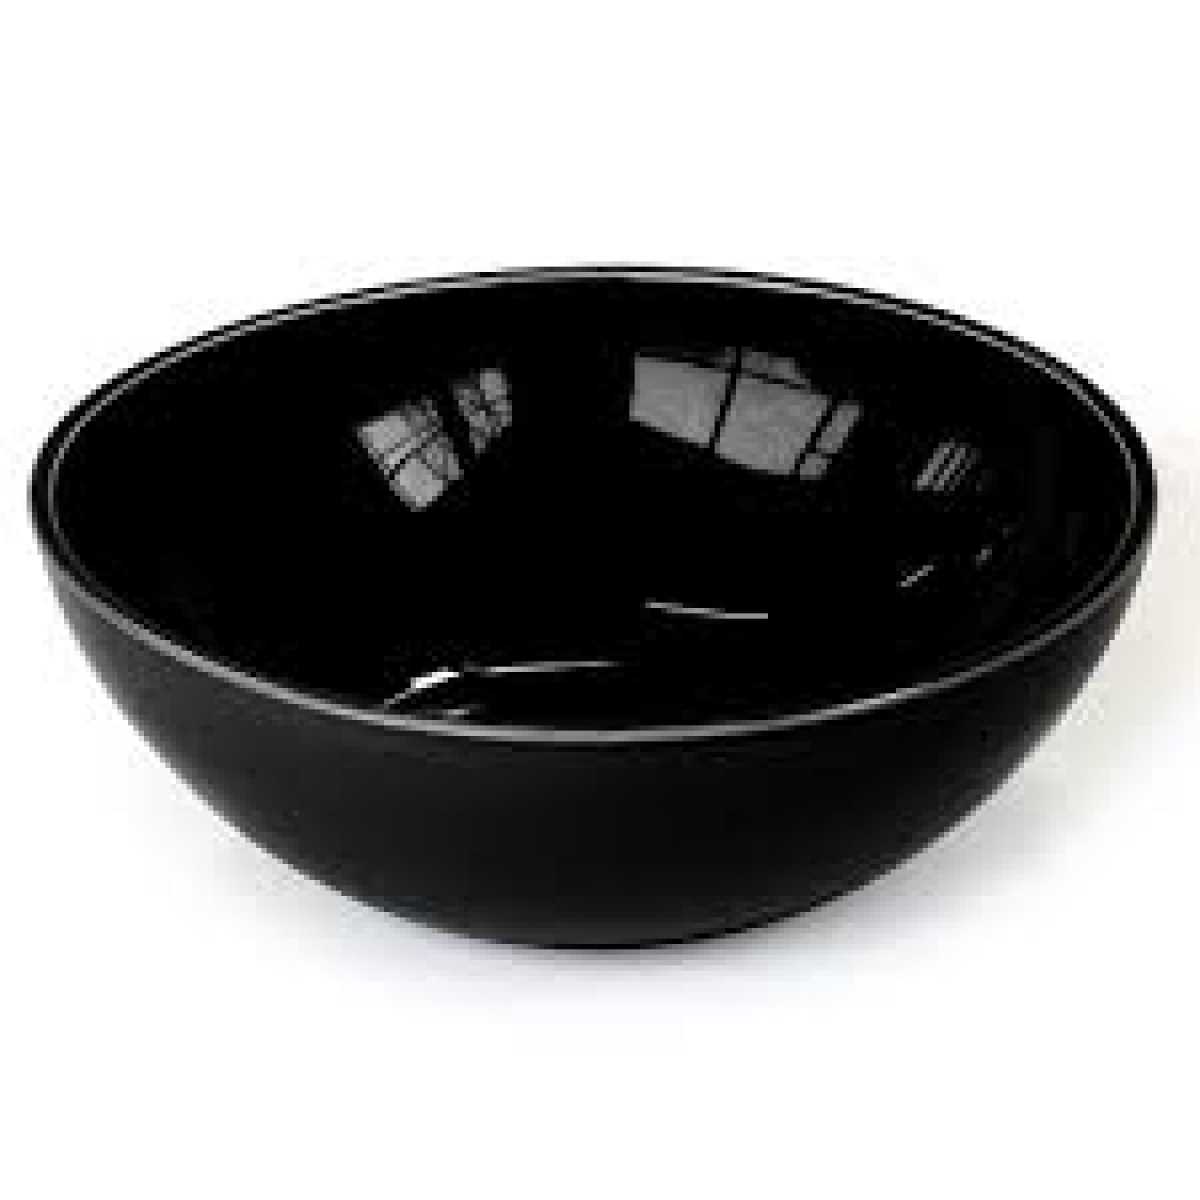 CRASTER Tilt Black Bowl – Large